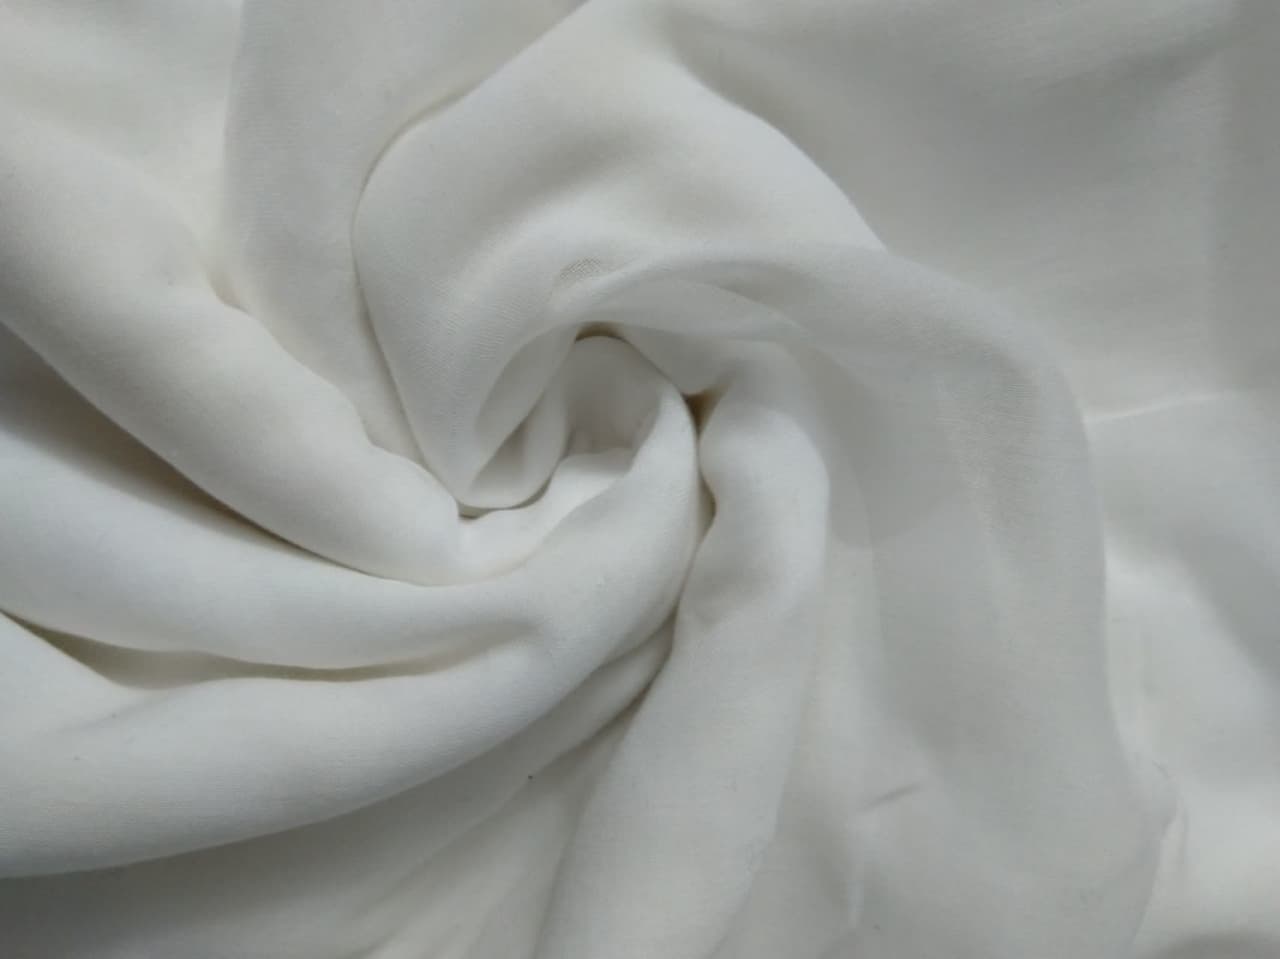 https://shp.aradbranding.com/فروش پارچه کجراه سفید + قیمت خرید به صرفه